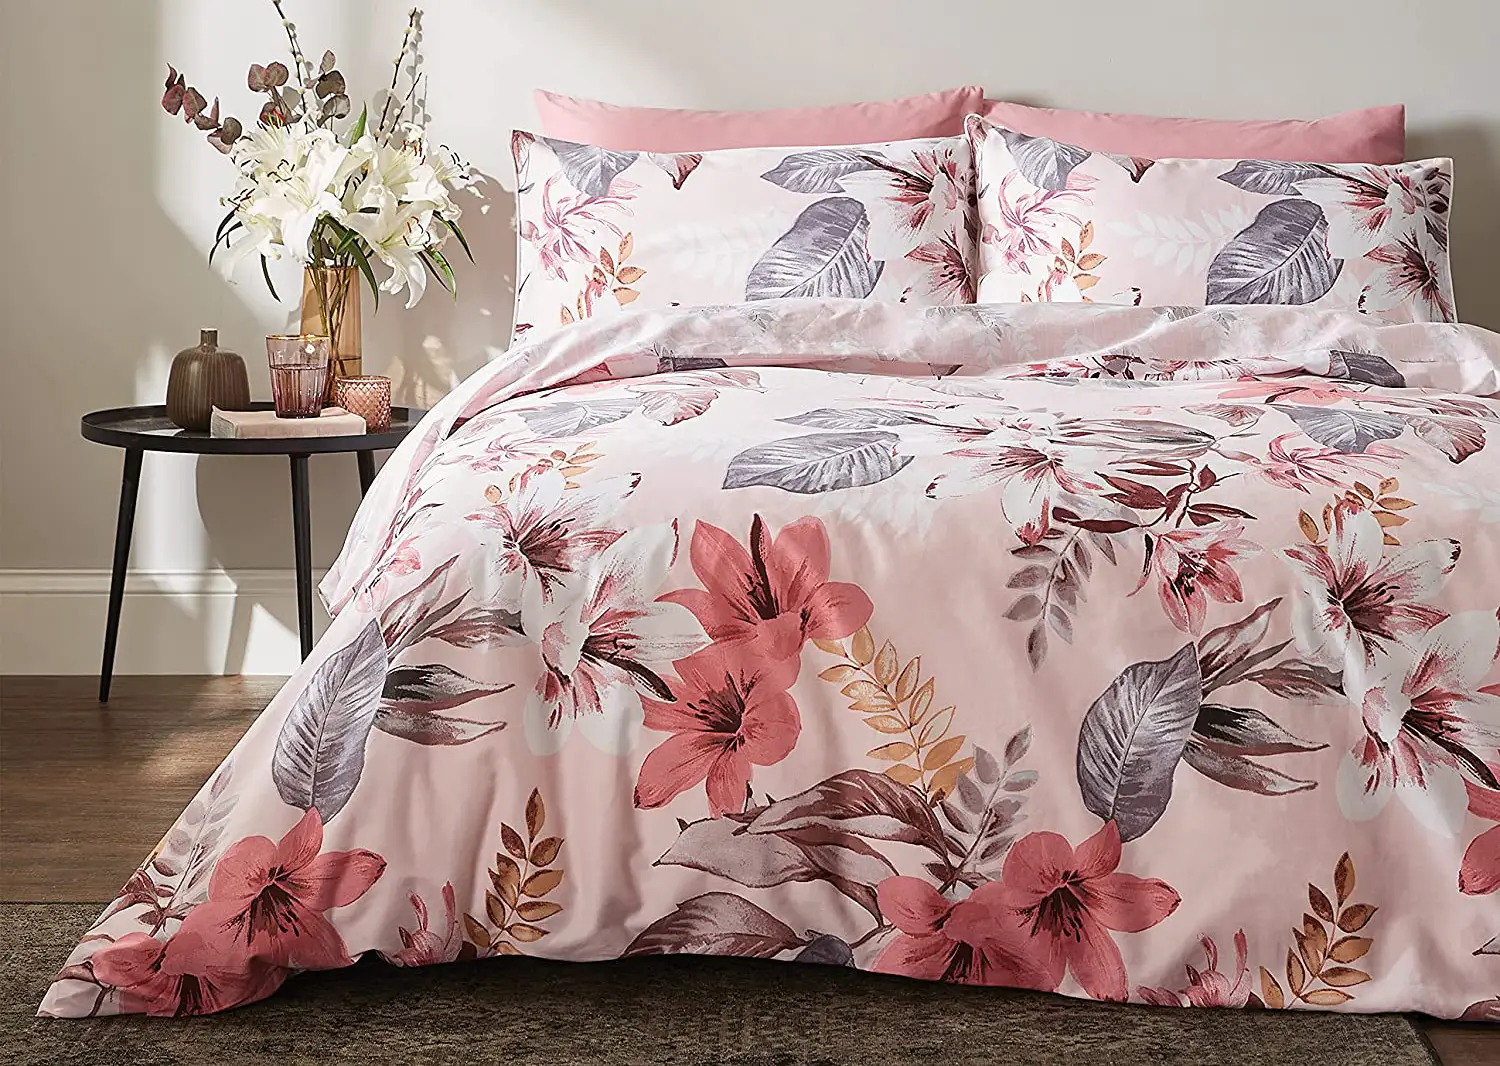 Flowery Bedspread